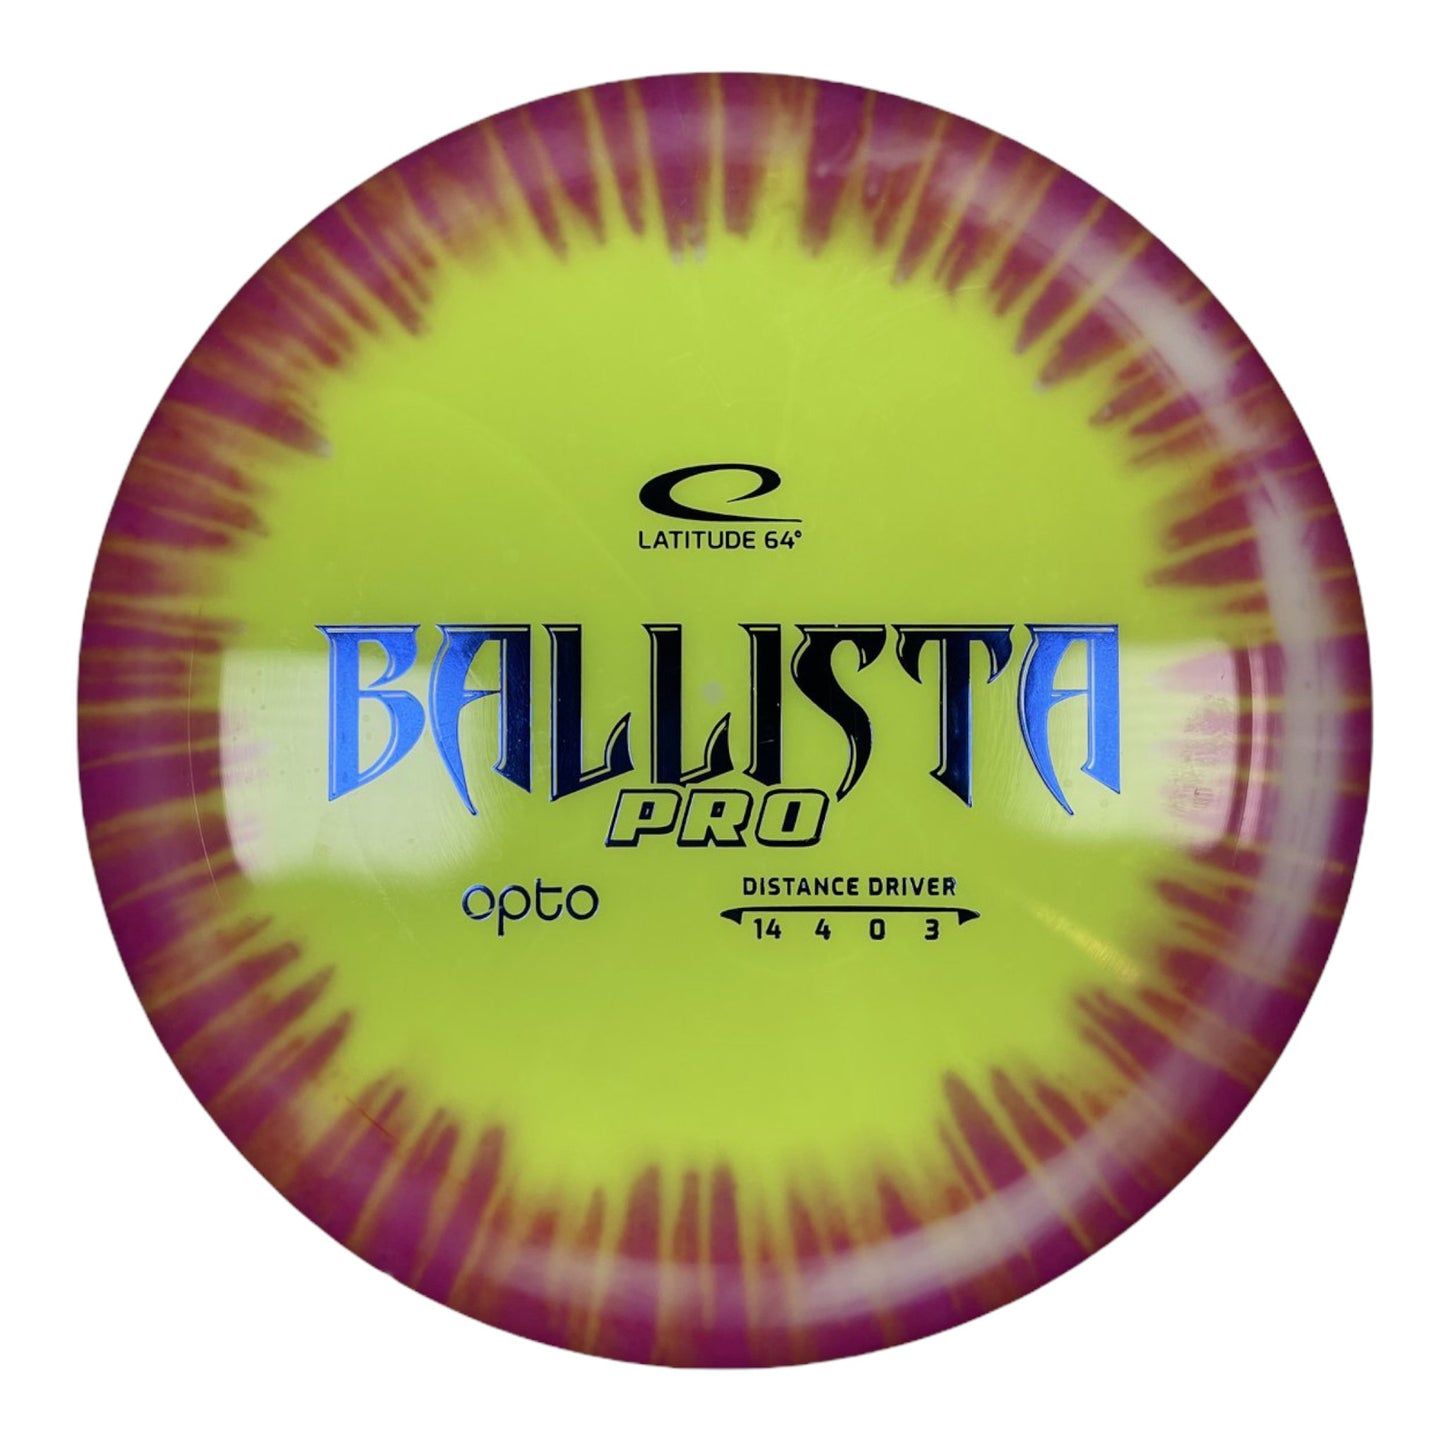 Latitude 64 Ballista Pro | Opto | Orange/Tiedye 173-176g Disc Golf